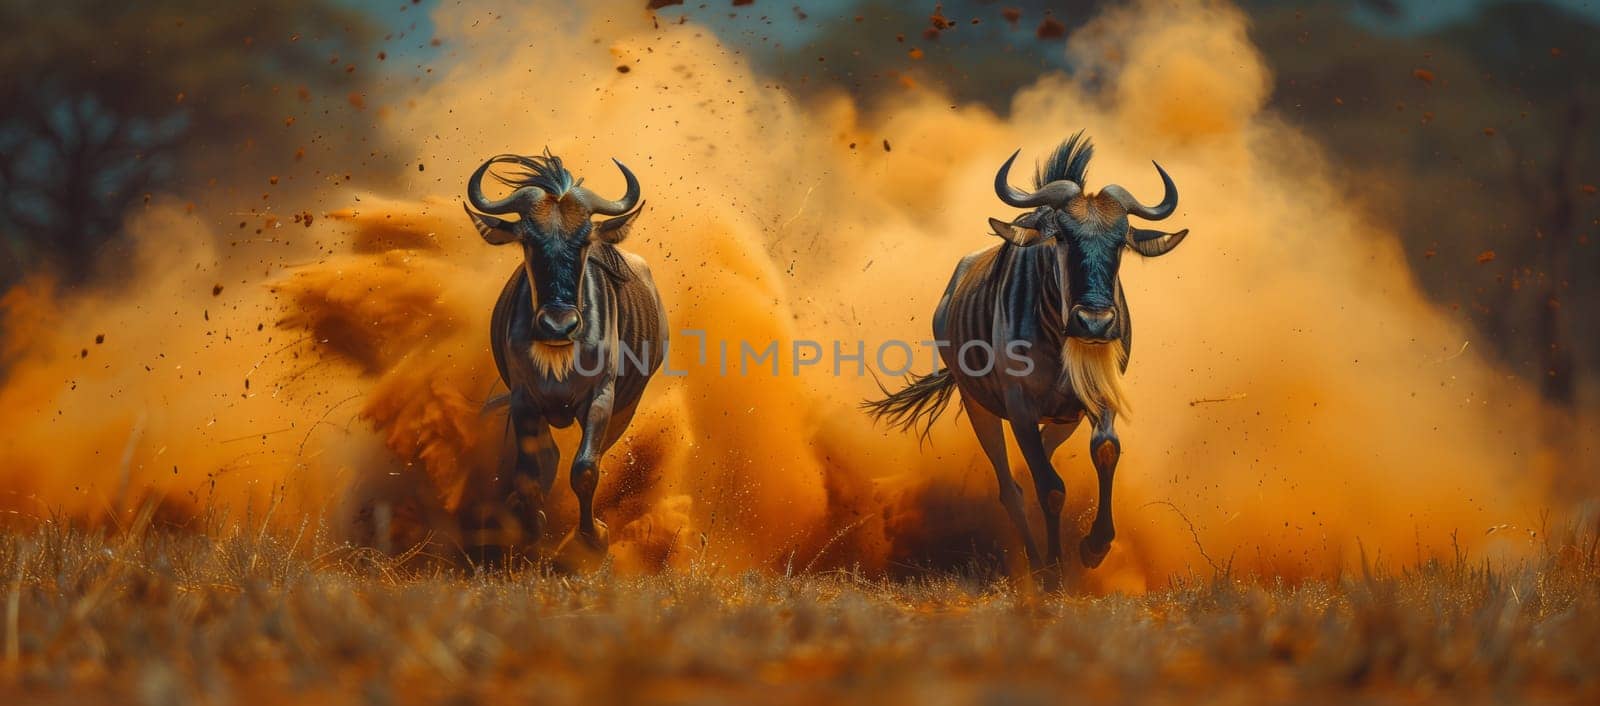 Working animals, two wildebeest running through dusty grassland by richwolf